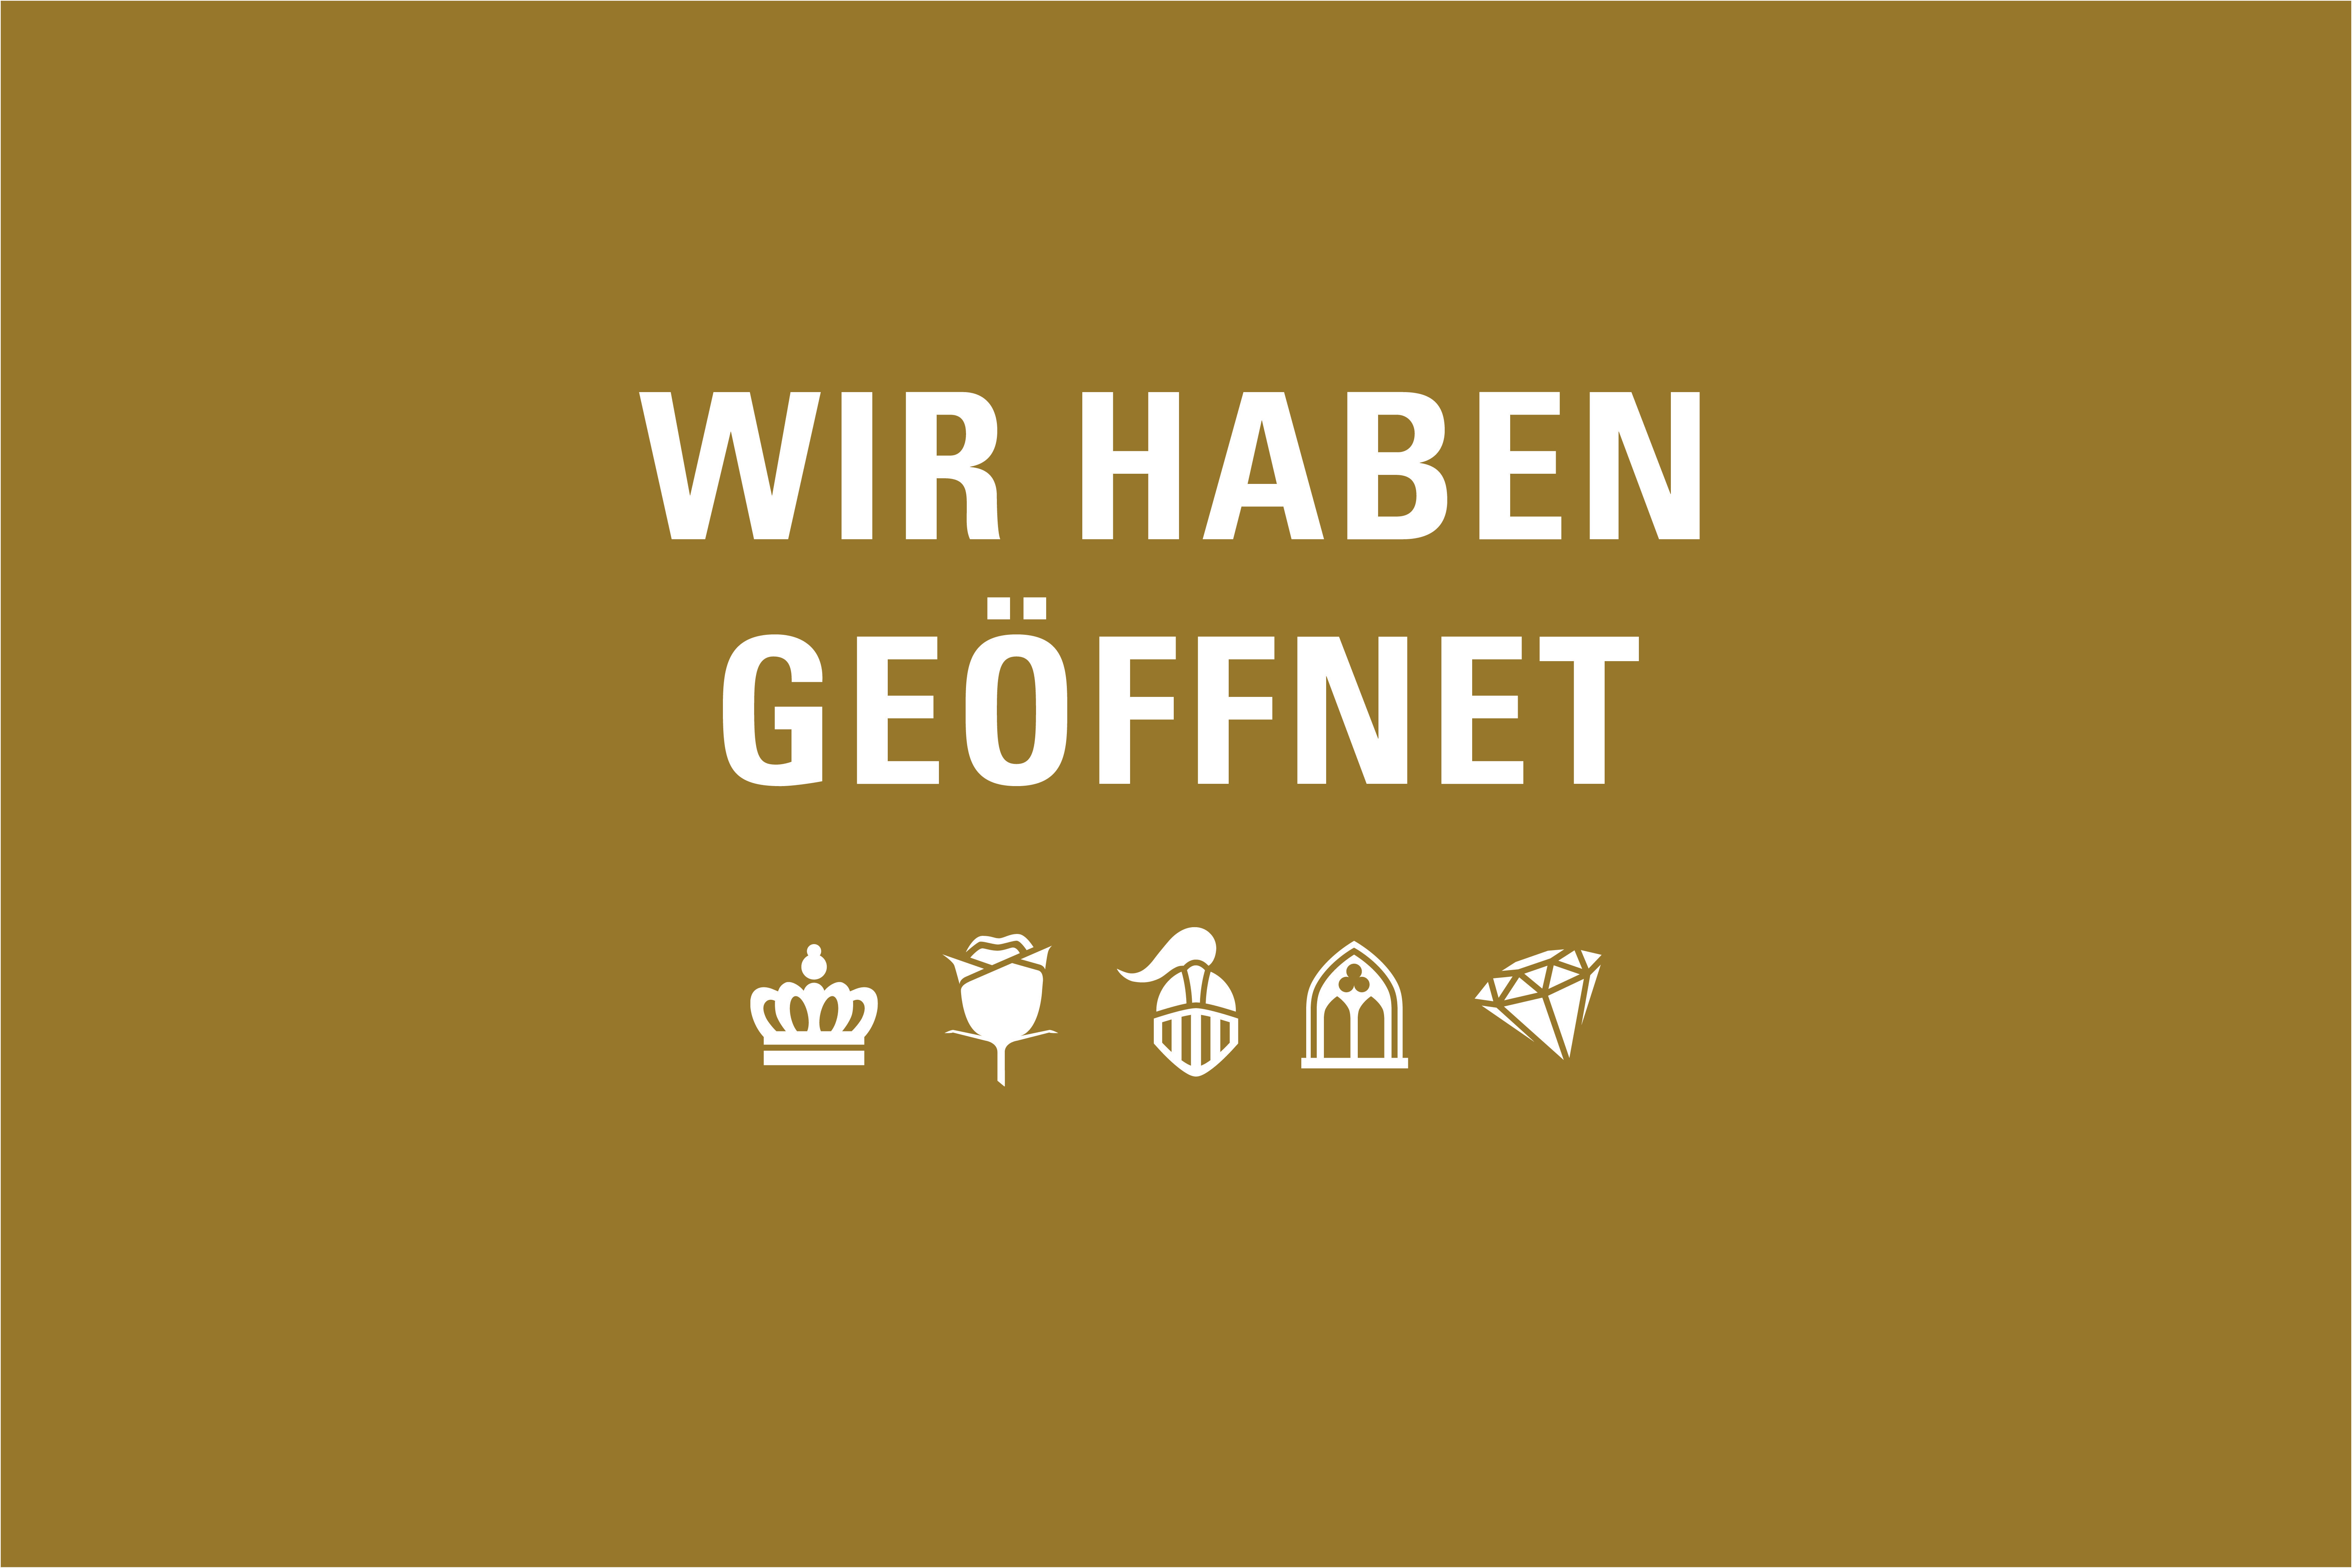 Motiv der Staatlichen Schlösser und Gärten Baden-Württemberg zur stufenweisen Öffnung